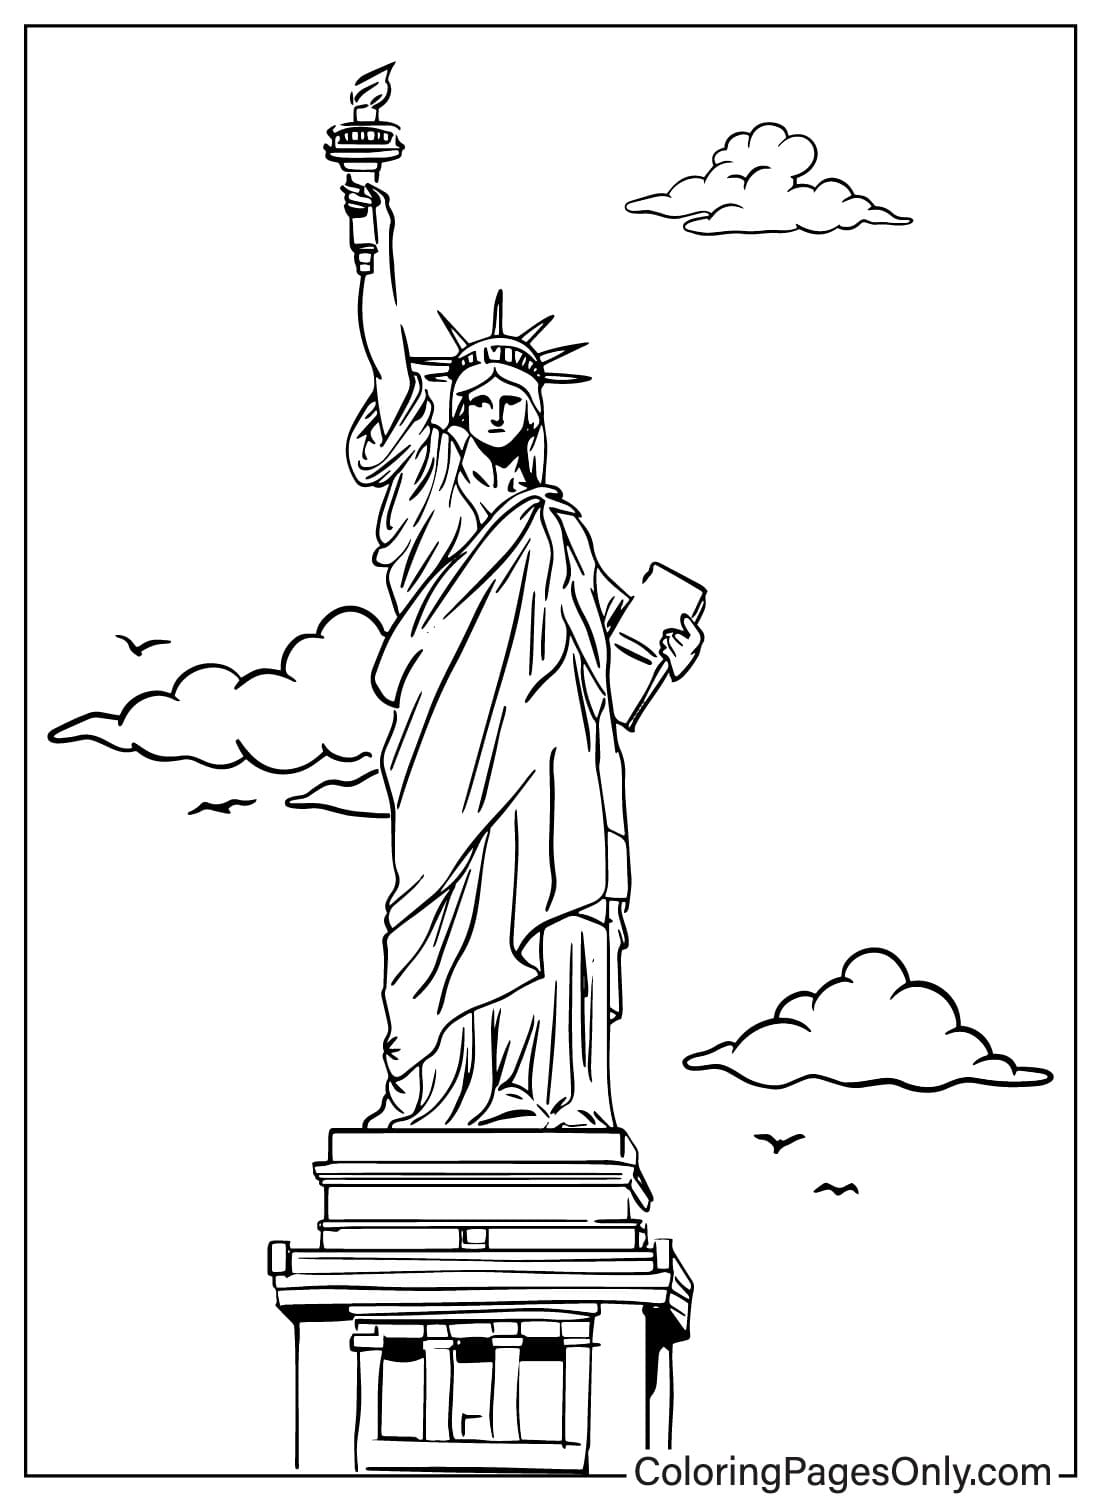 Архитектурная раскраска Статуя Свободы из Статуи Свободы